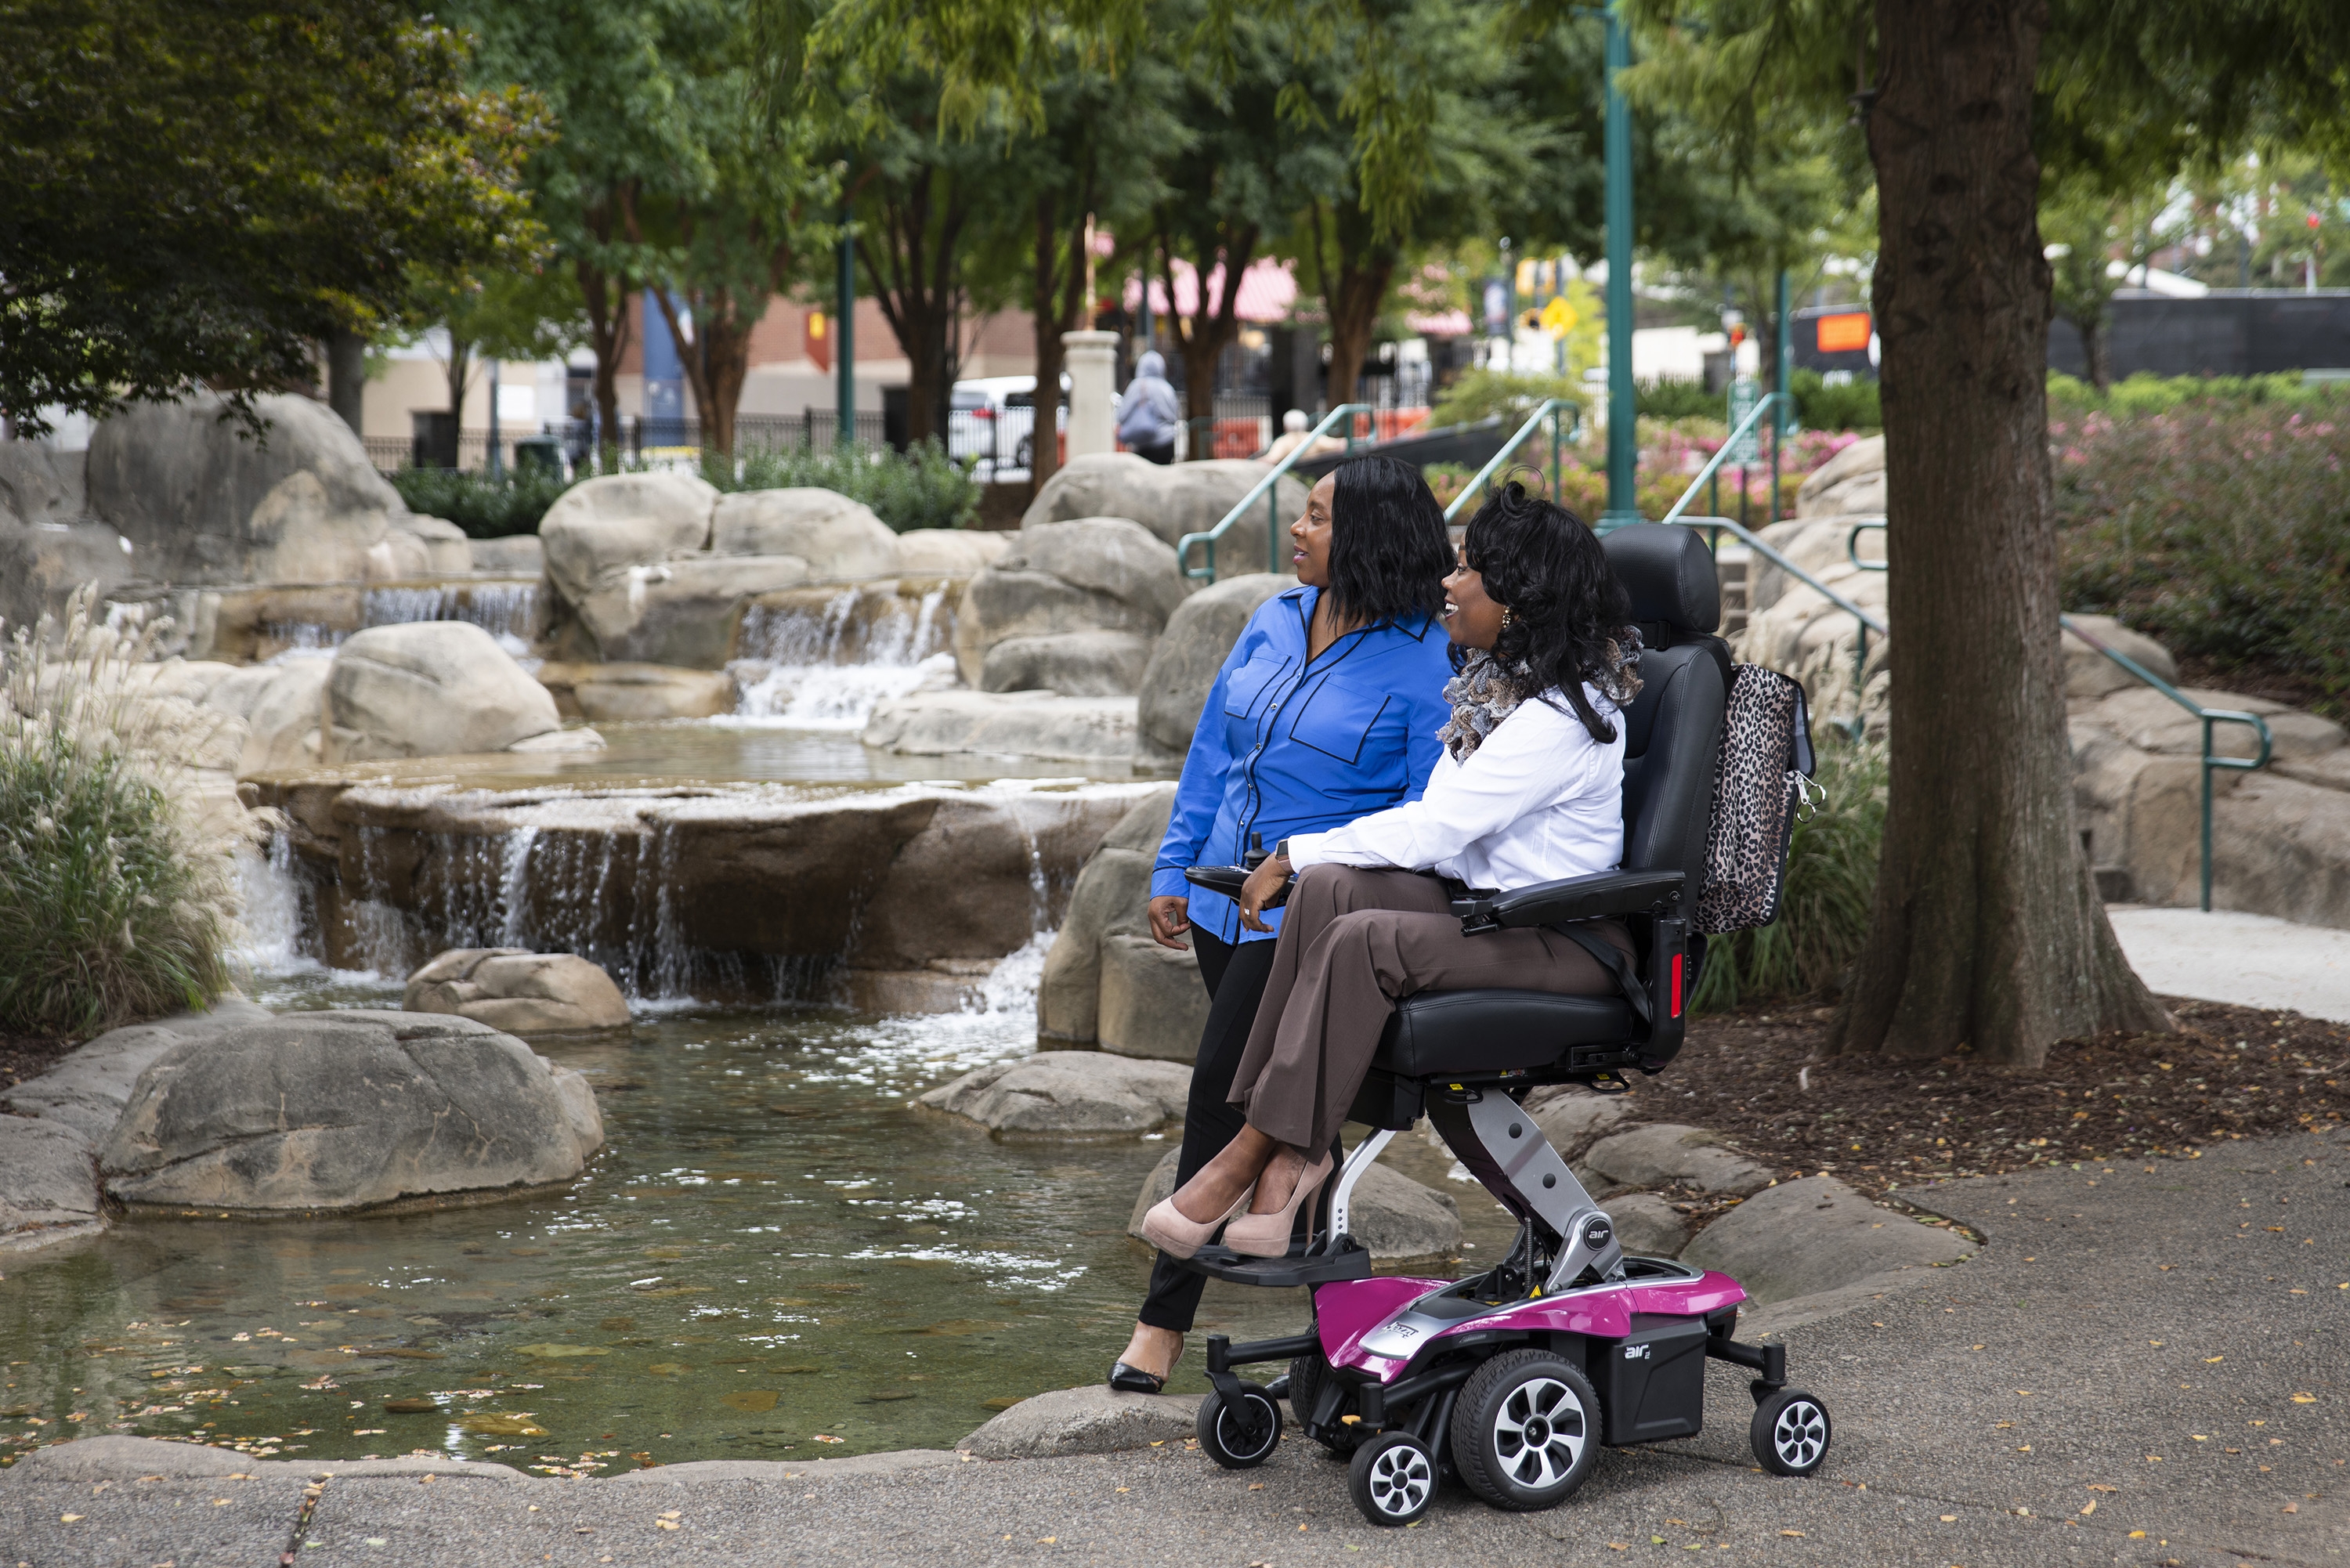 美國Pride普拉德進口升降電動輪椅老人殘疾人自動升降輪椅代步車